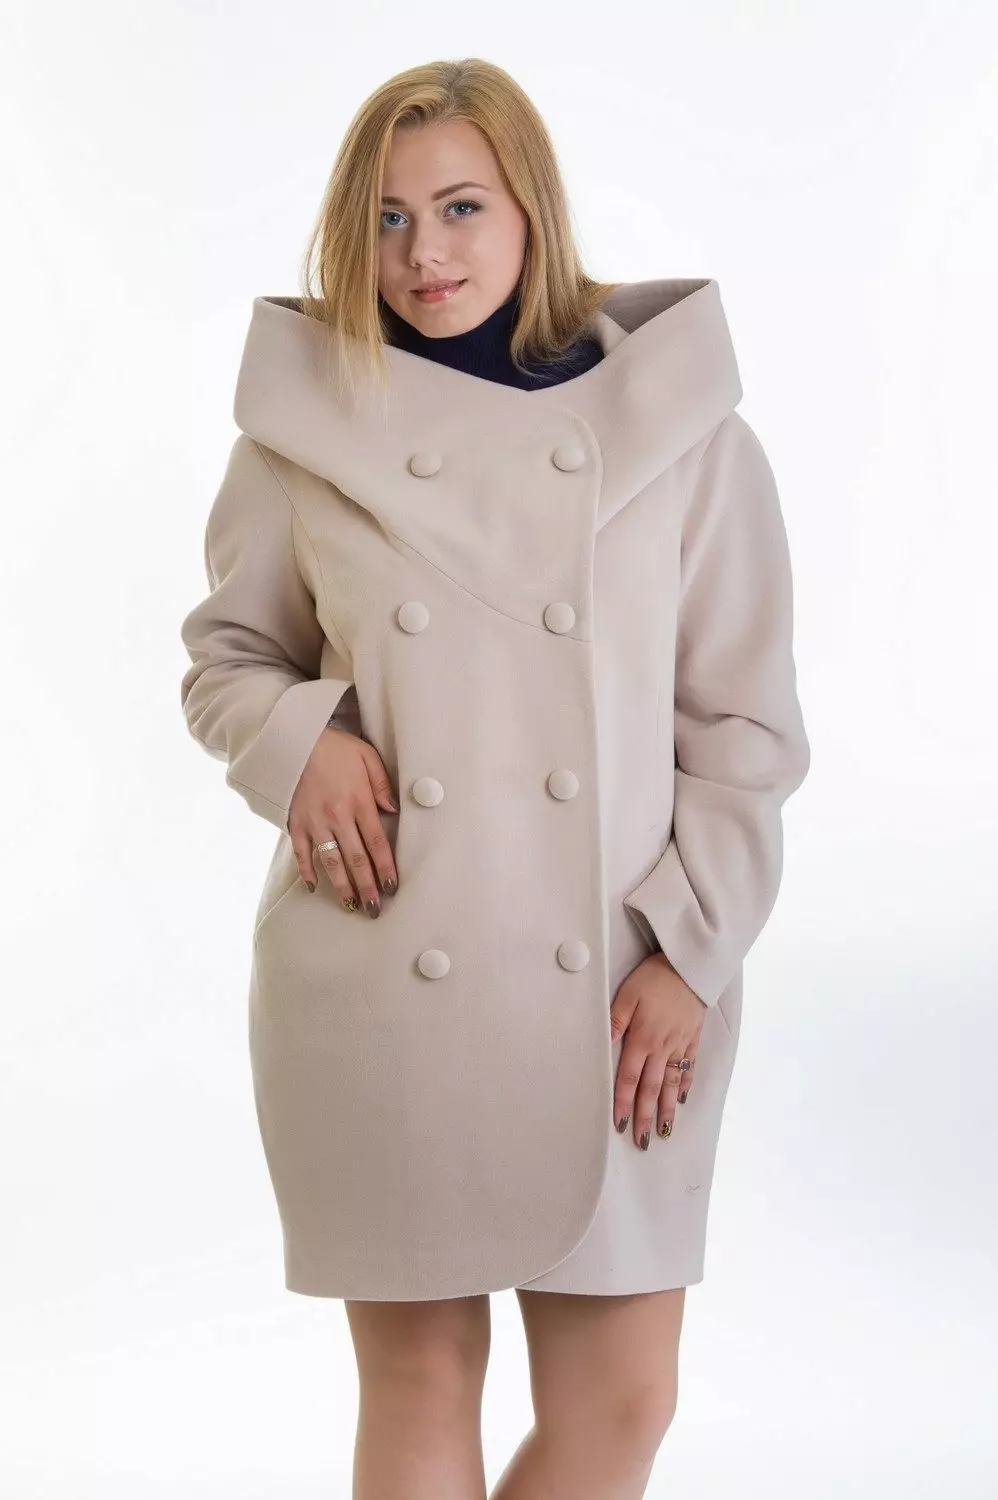 Žena kabát jaro 2021 (356 fotek): od ruských výrobců, modelů, stylů a stylů, prošívaných, krátkých, tlumení, kůže 623_127